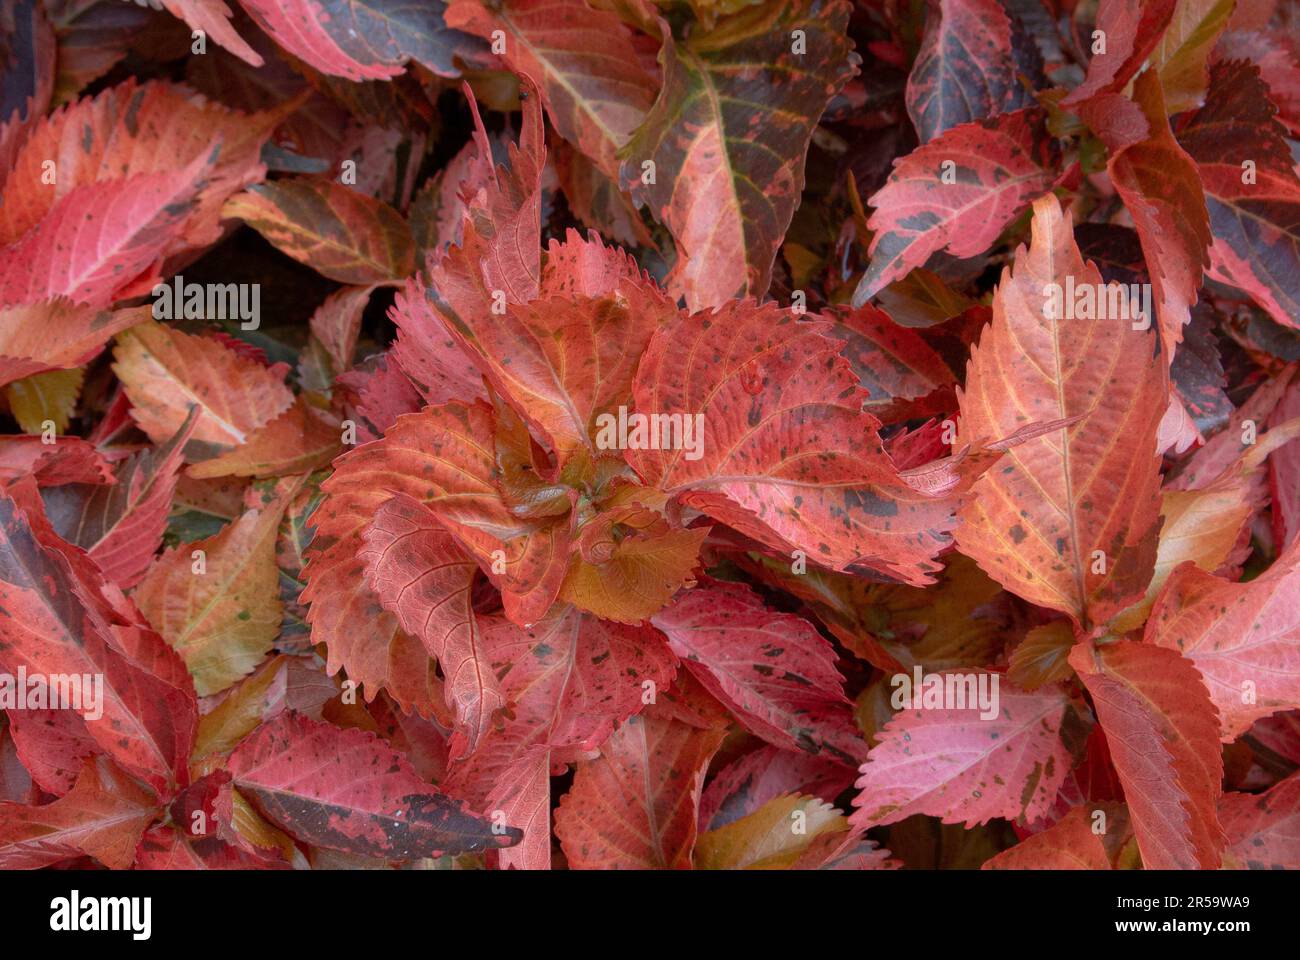 Kräftige Farbe der Blätter von Acalypha Wilkesiana, gebräuchliche Namen sind Copperleaf und Jacob’s Coat. Stockfoto